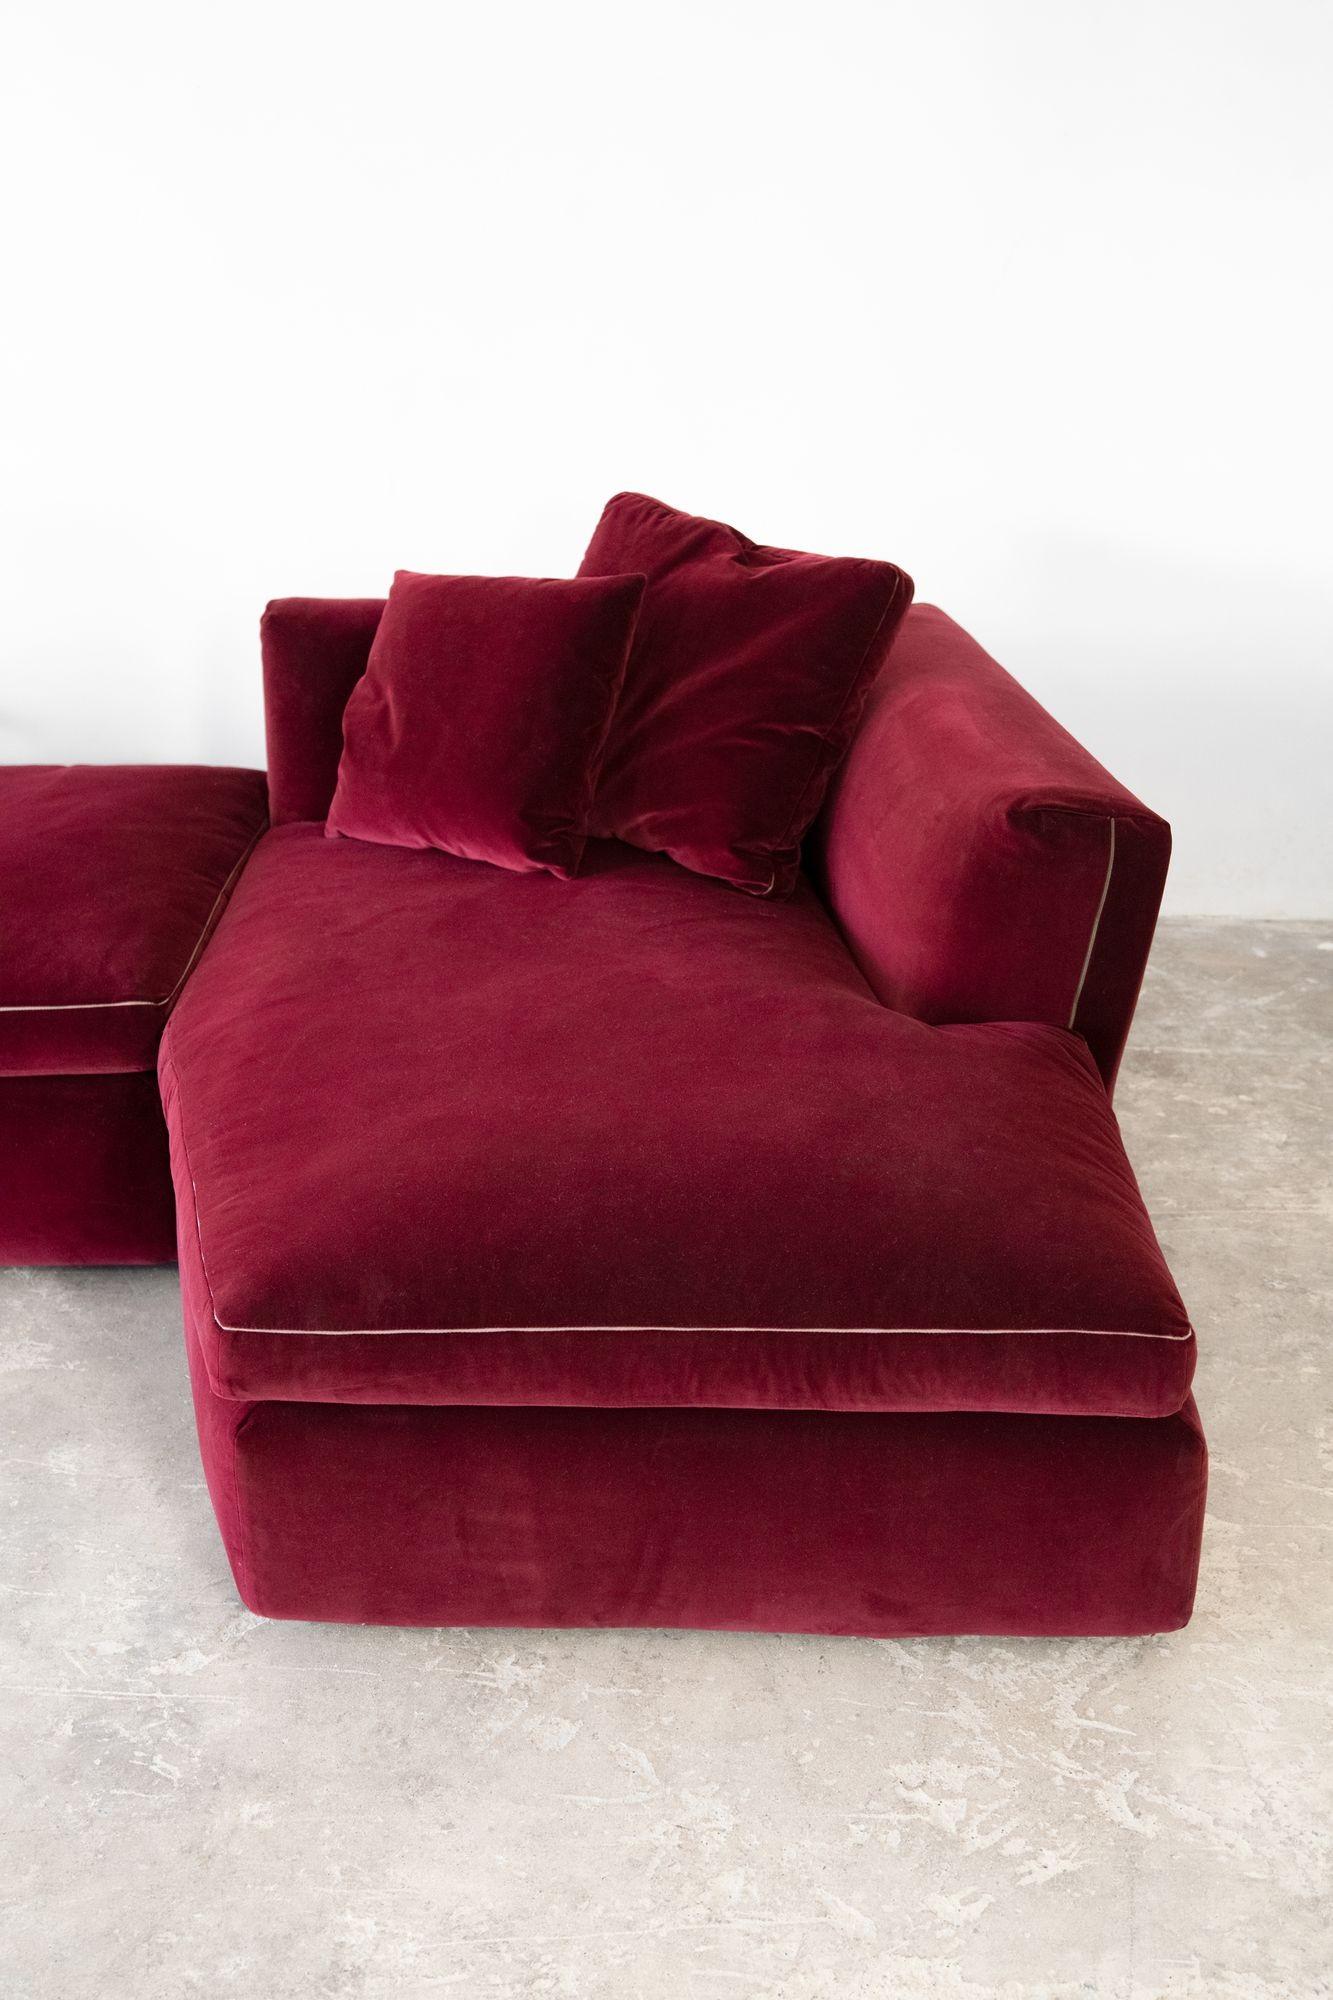 Velvet 'Dress-Up' Sectional Sofa Designed by Rodolfo Dordoni for Cassina For Sale 1